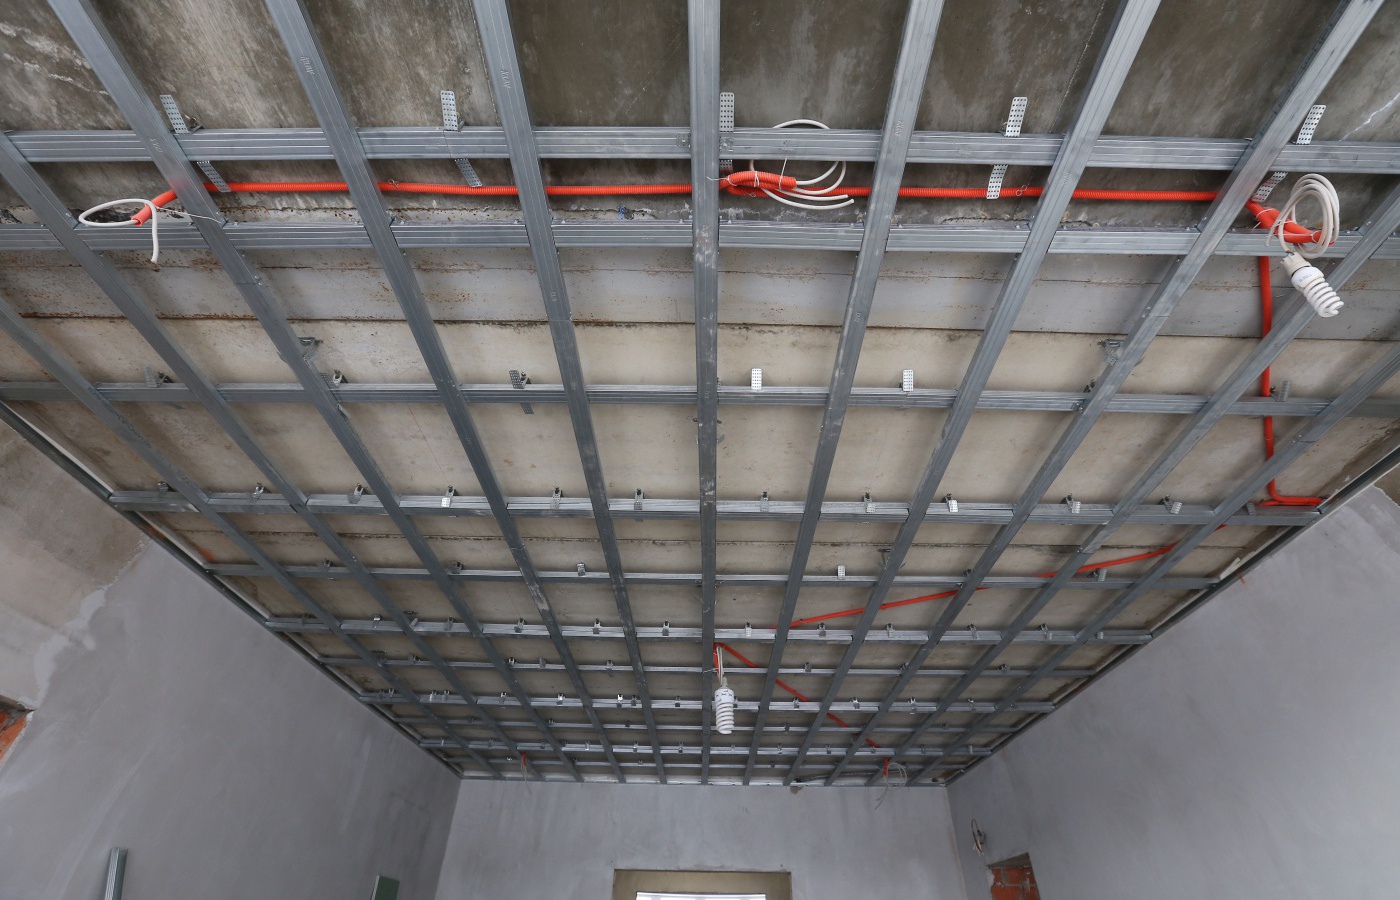 Как сделать гипсокартонный потолок своими руками: Журнал о дизайне интерьеров и ремонте Идеи вашего дома — IVD.ru